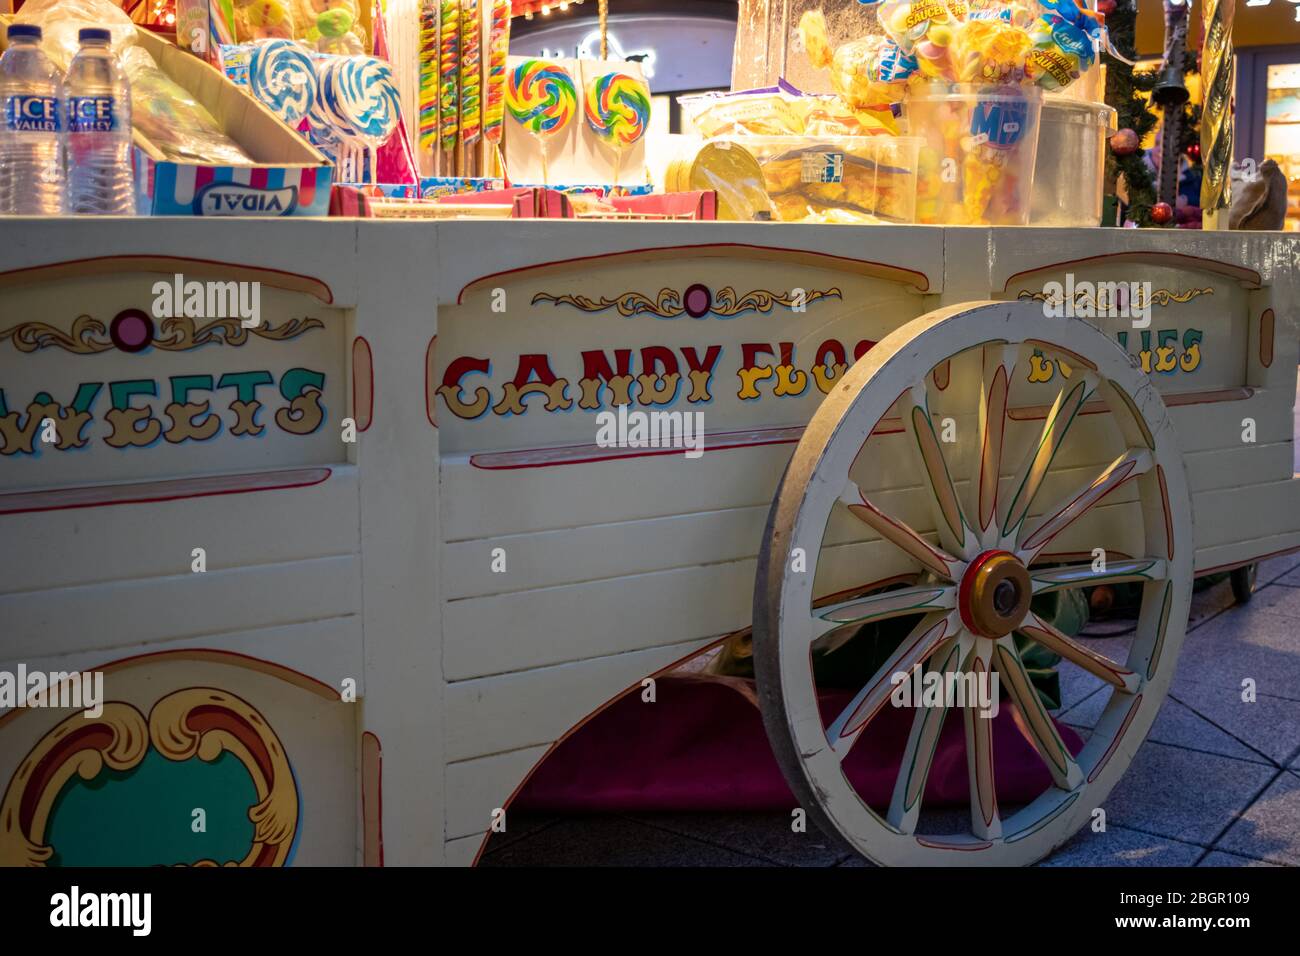 Eine traditionelle Süßigkeiten und Zuckerwatte Wagen zu einer Kost Zu  Weihnachten Stockfotografie - Alamy